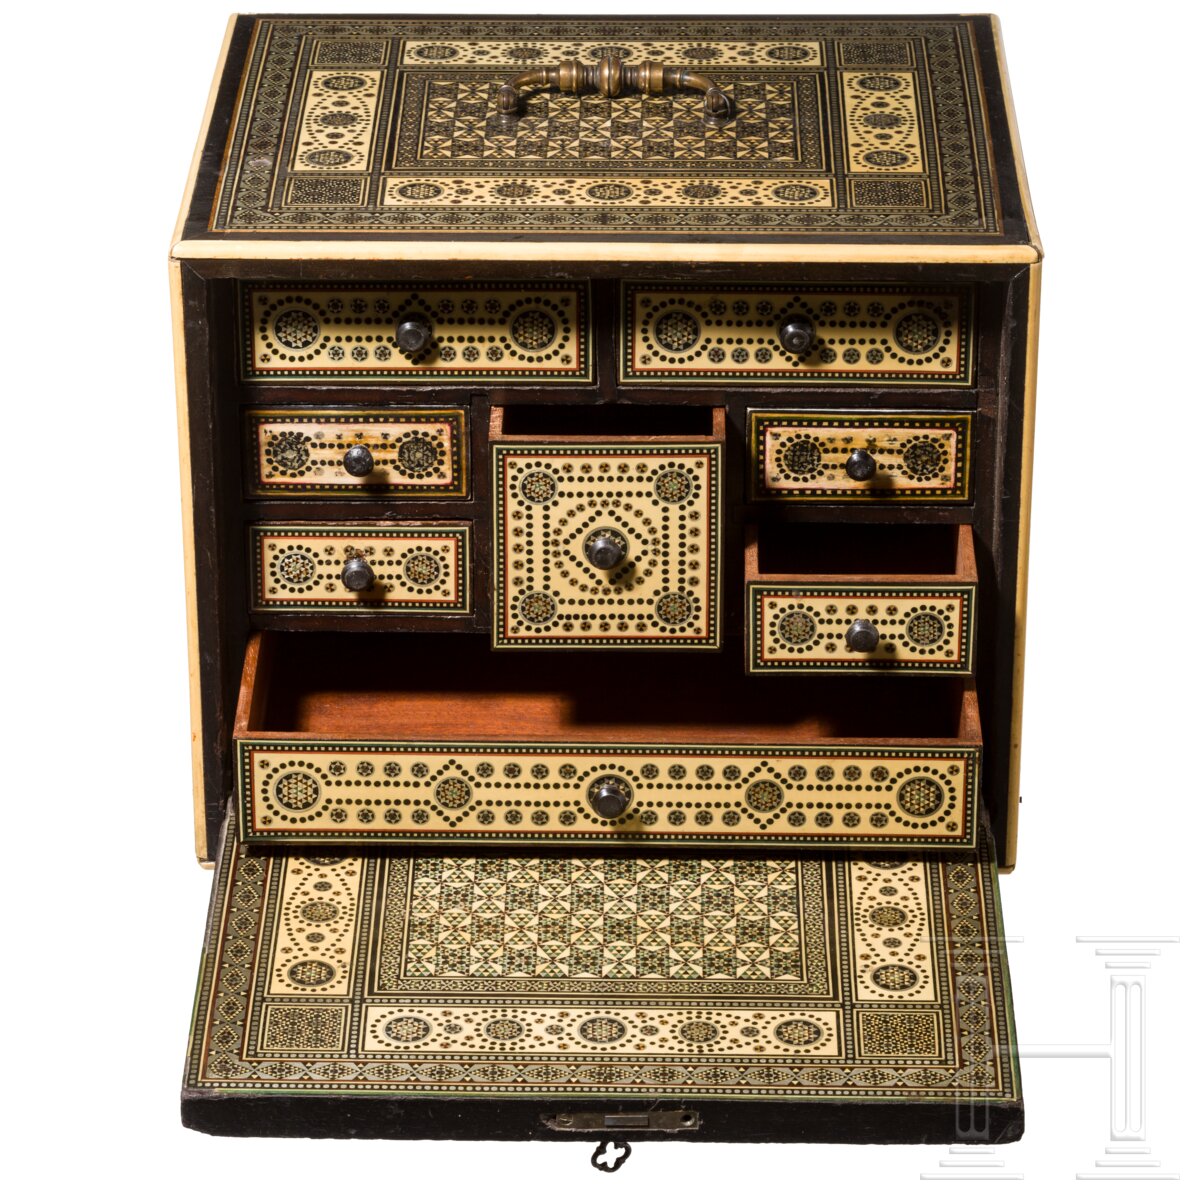 Kleines Kabinettkästchen, Indien, um 1800